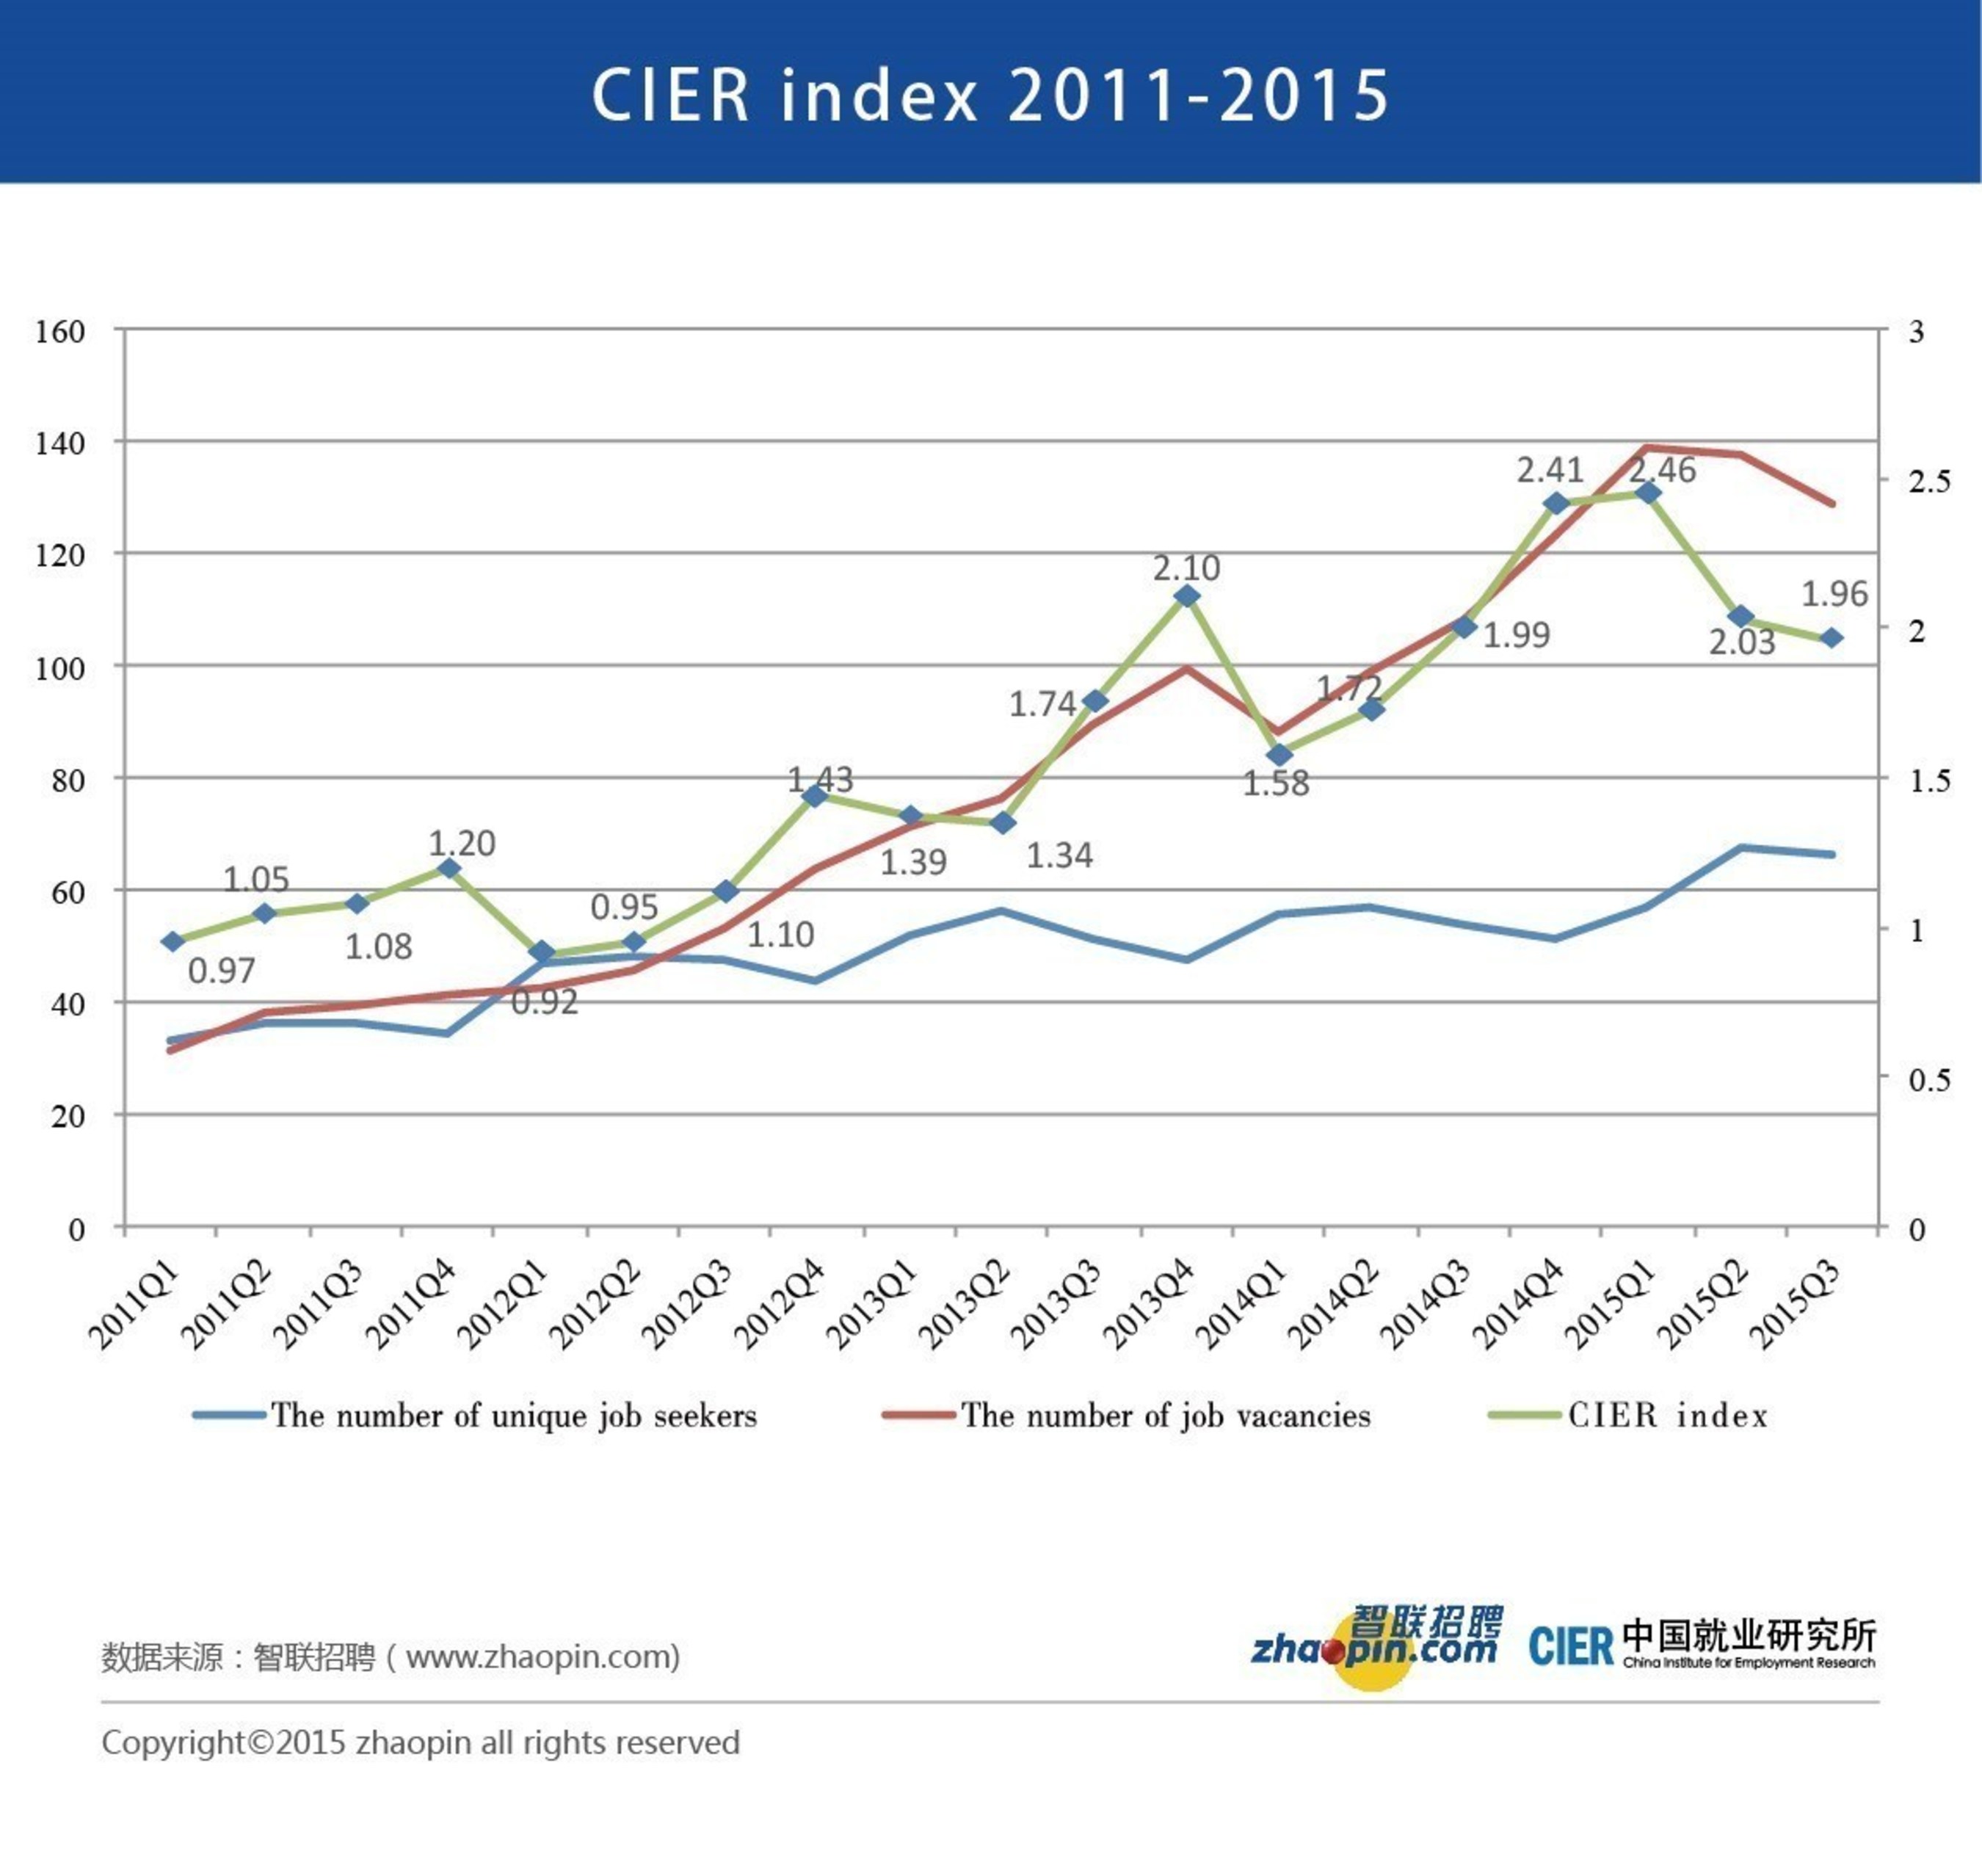 CIER index 2011-2015